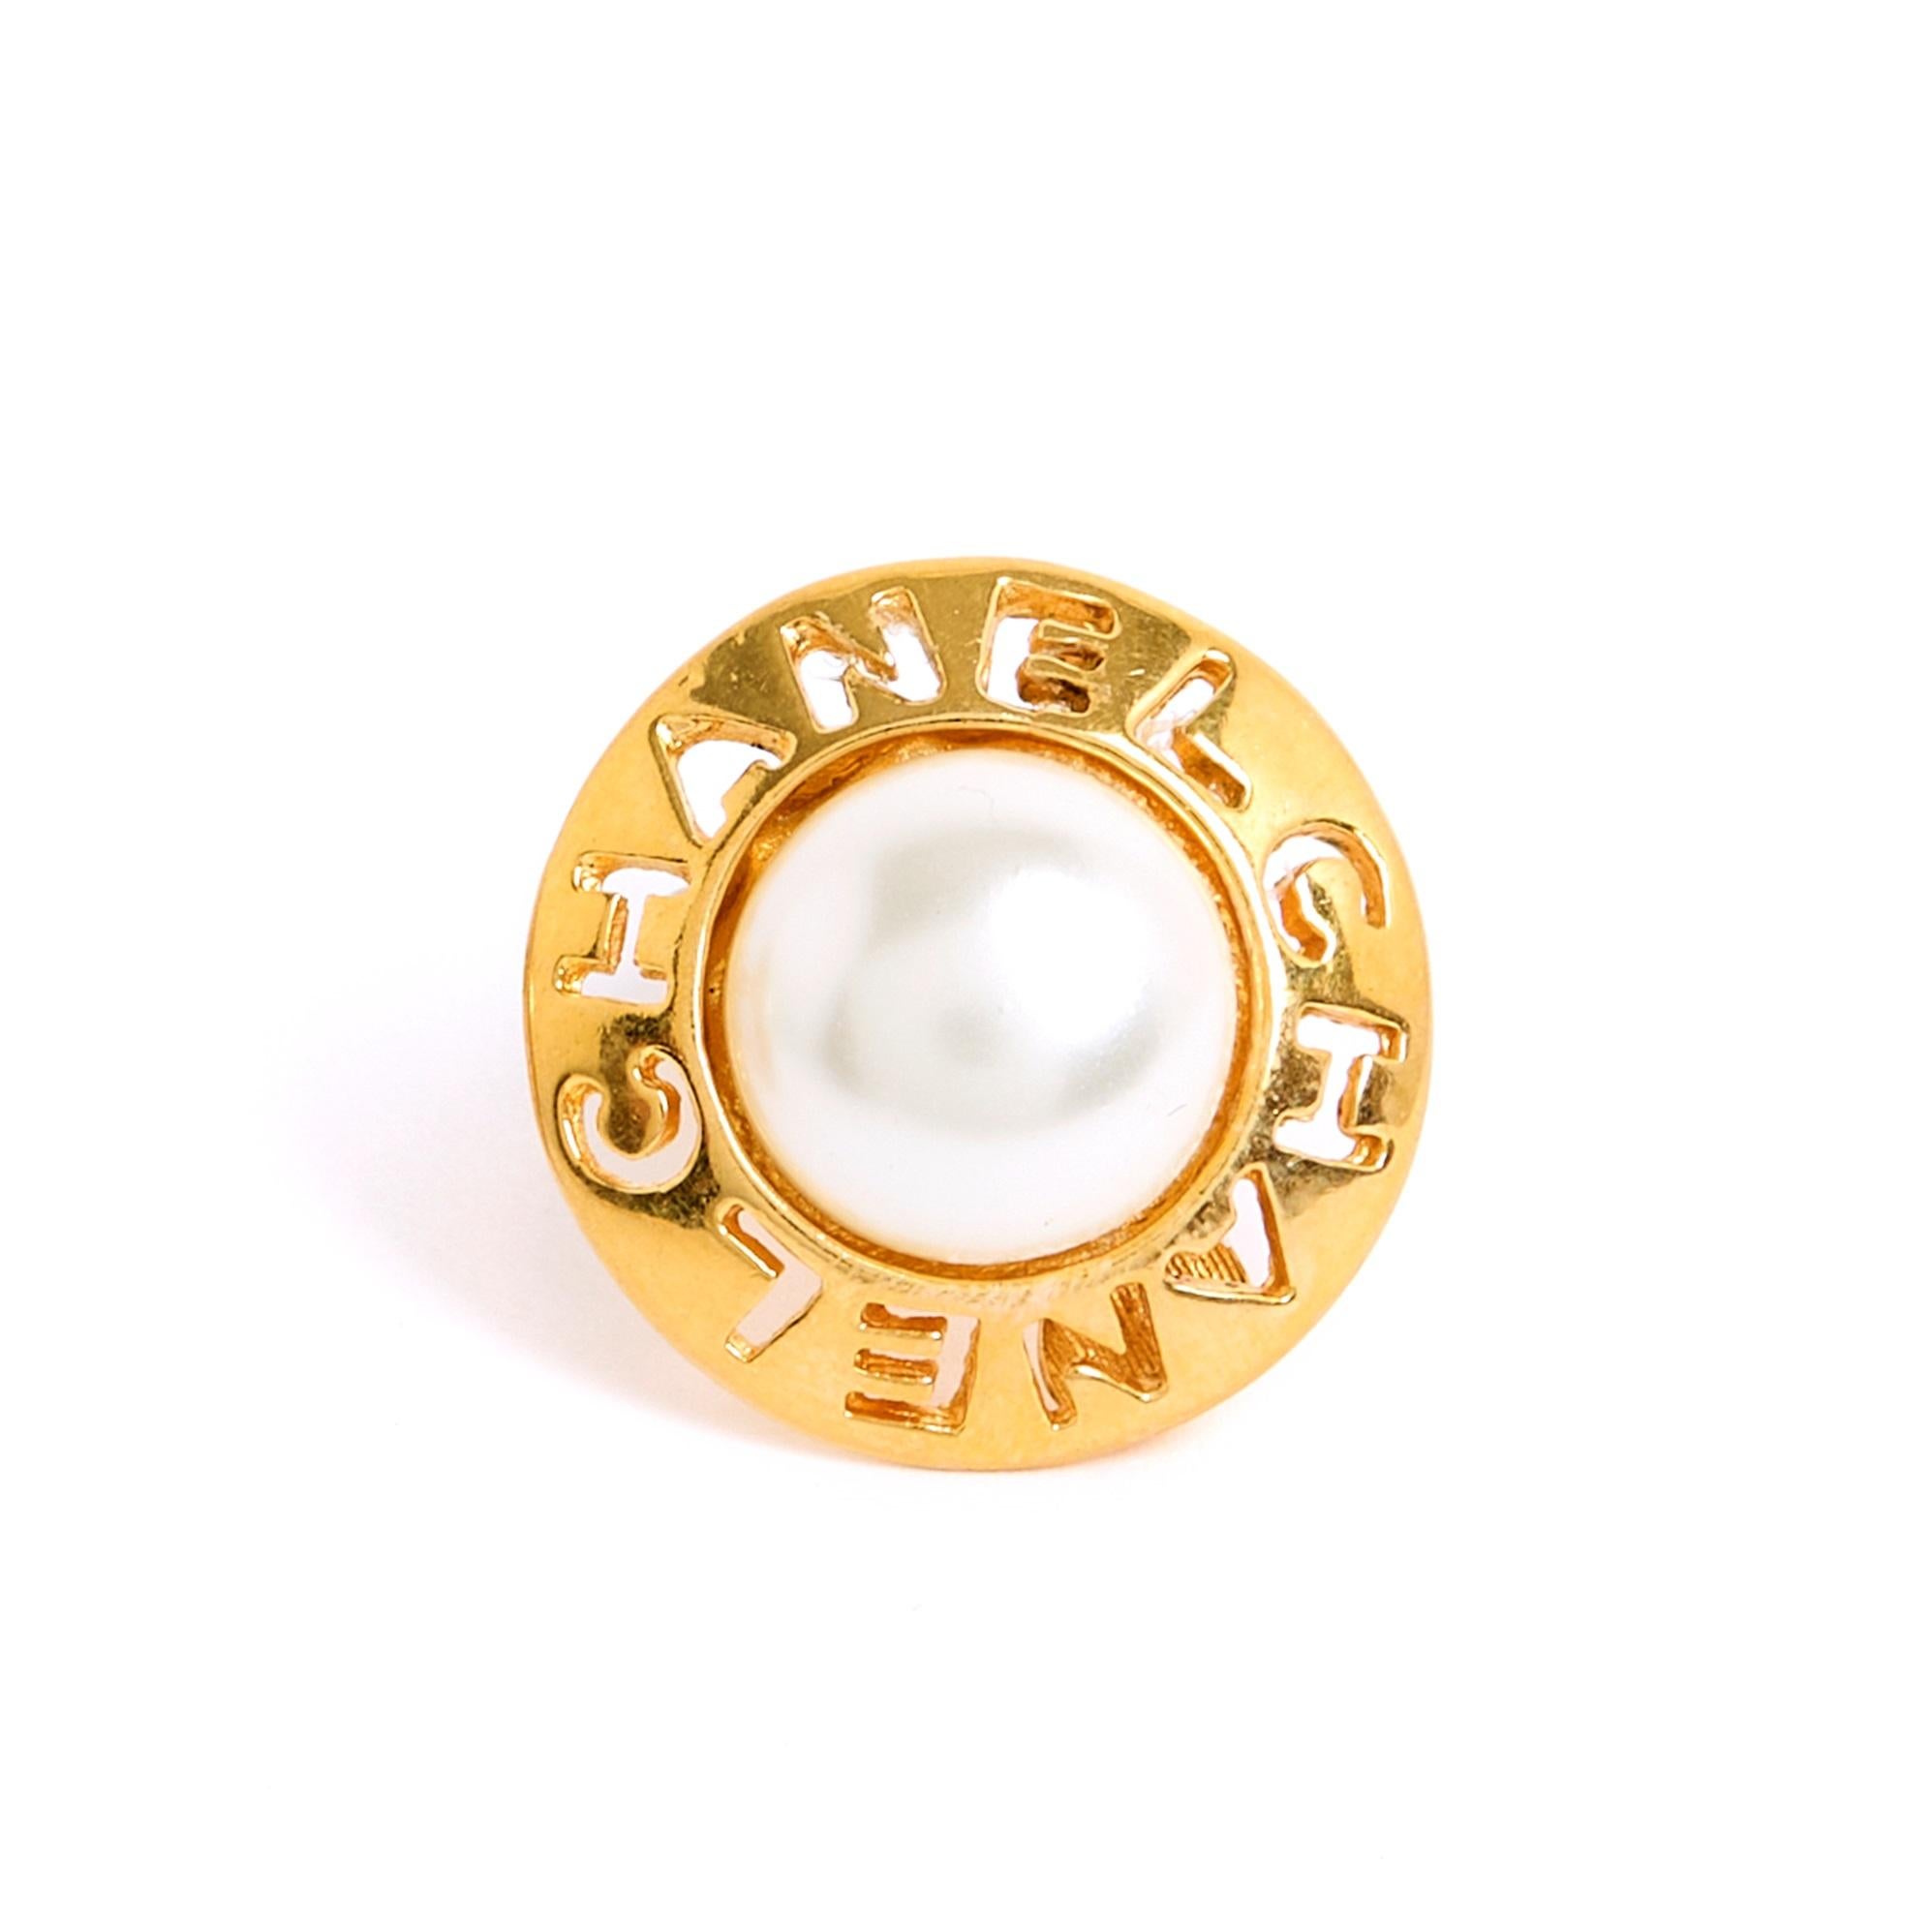 Chanel-Ohrringe, goldene Metallklammern mit durchbrochenen Buchstaben CHANEL, in der Mitte eine halbe ecrufarbene Zierperle, um 1990. Durchmesser 2.5 cm. Die Ohrringe weisen leichte Altersspuren auf, sind aber in sehr gutem Zustand, Sammlerstück und